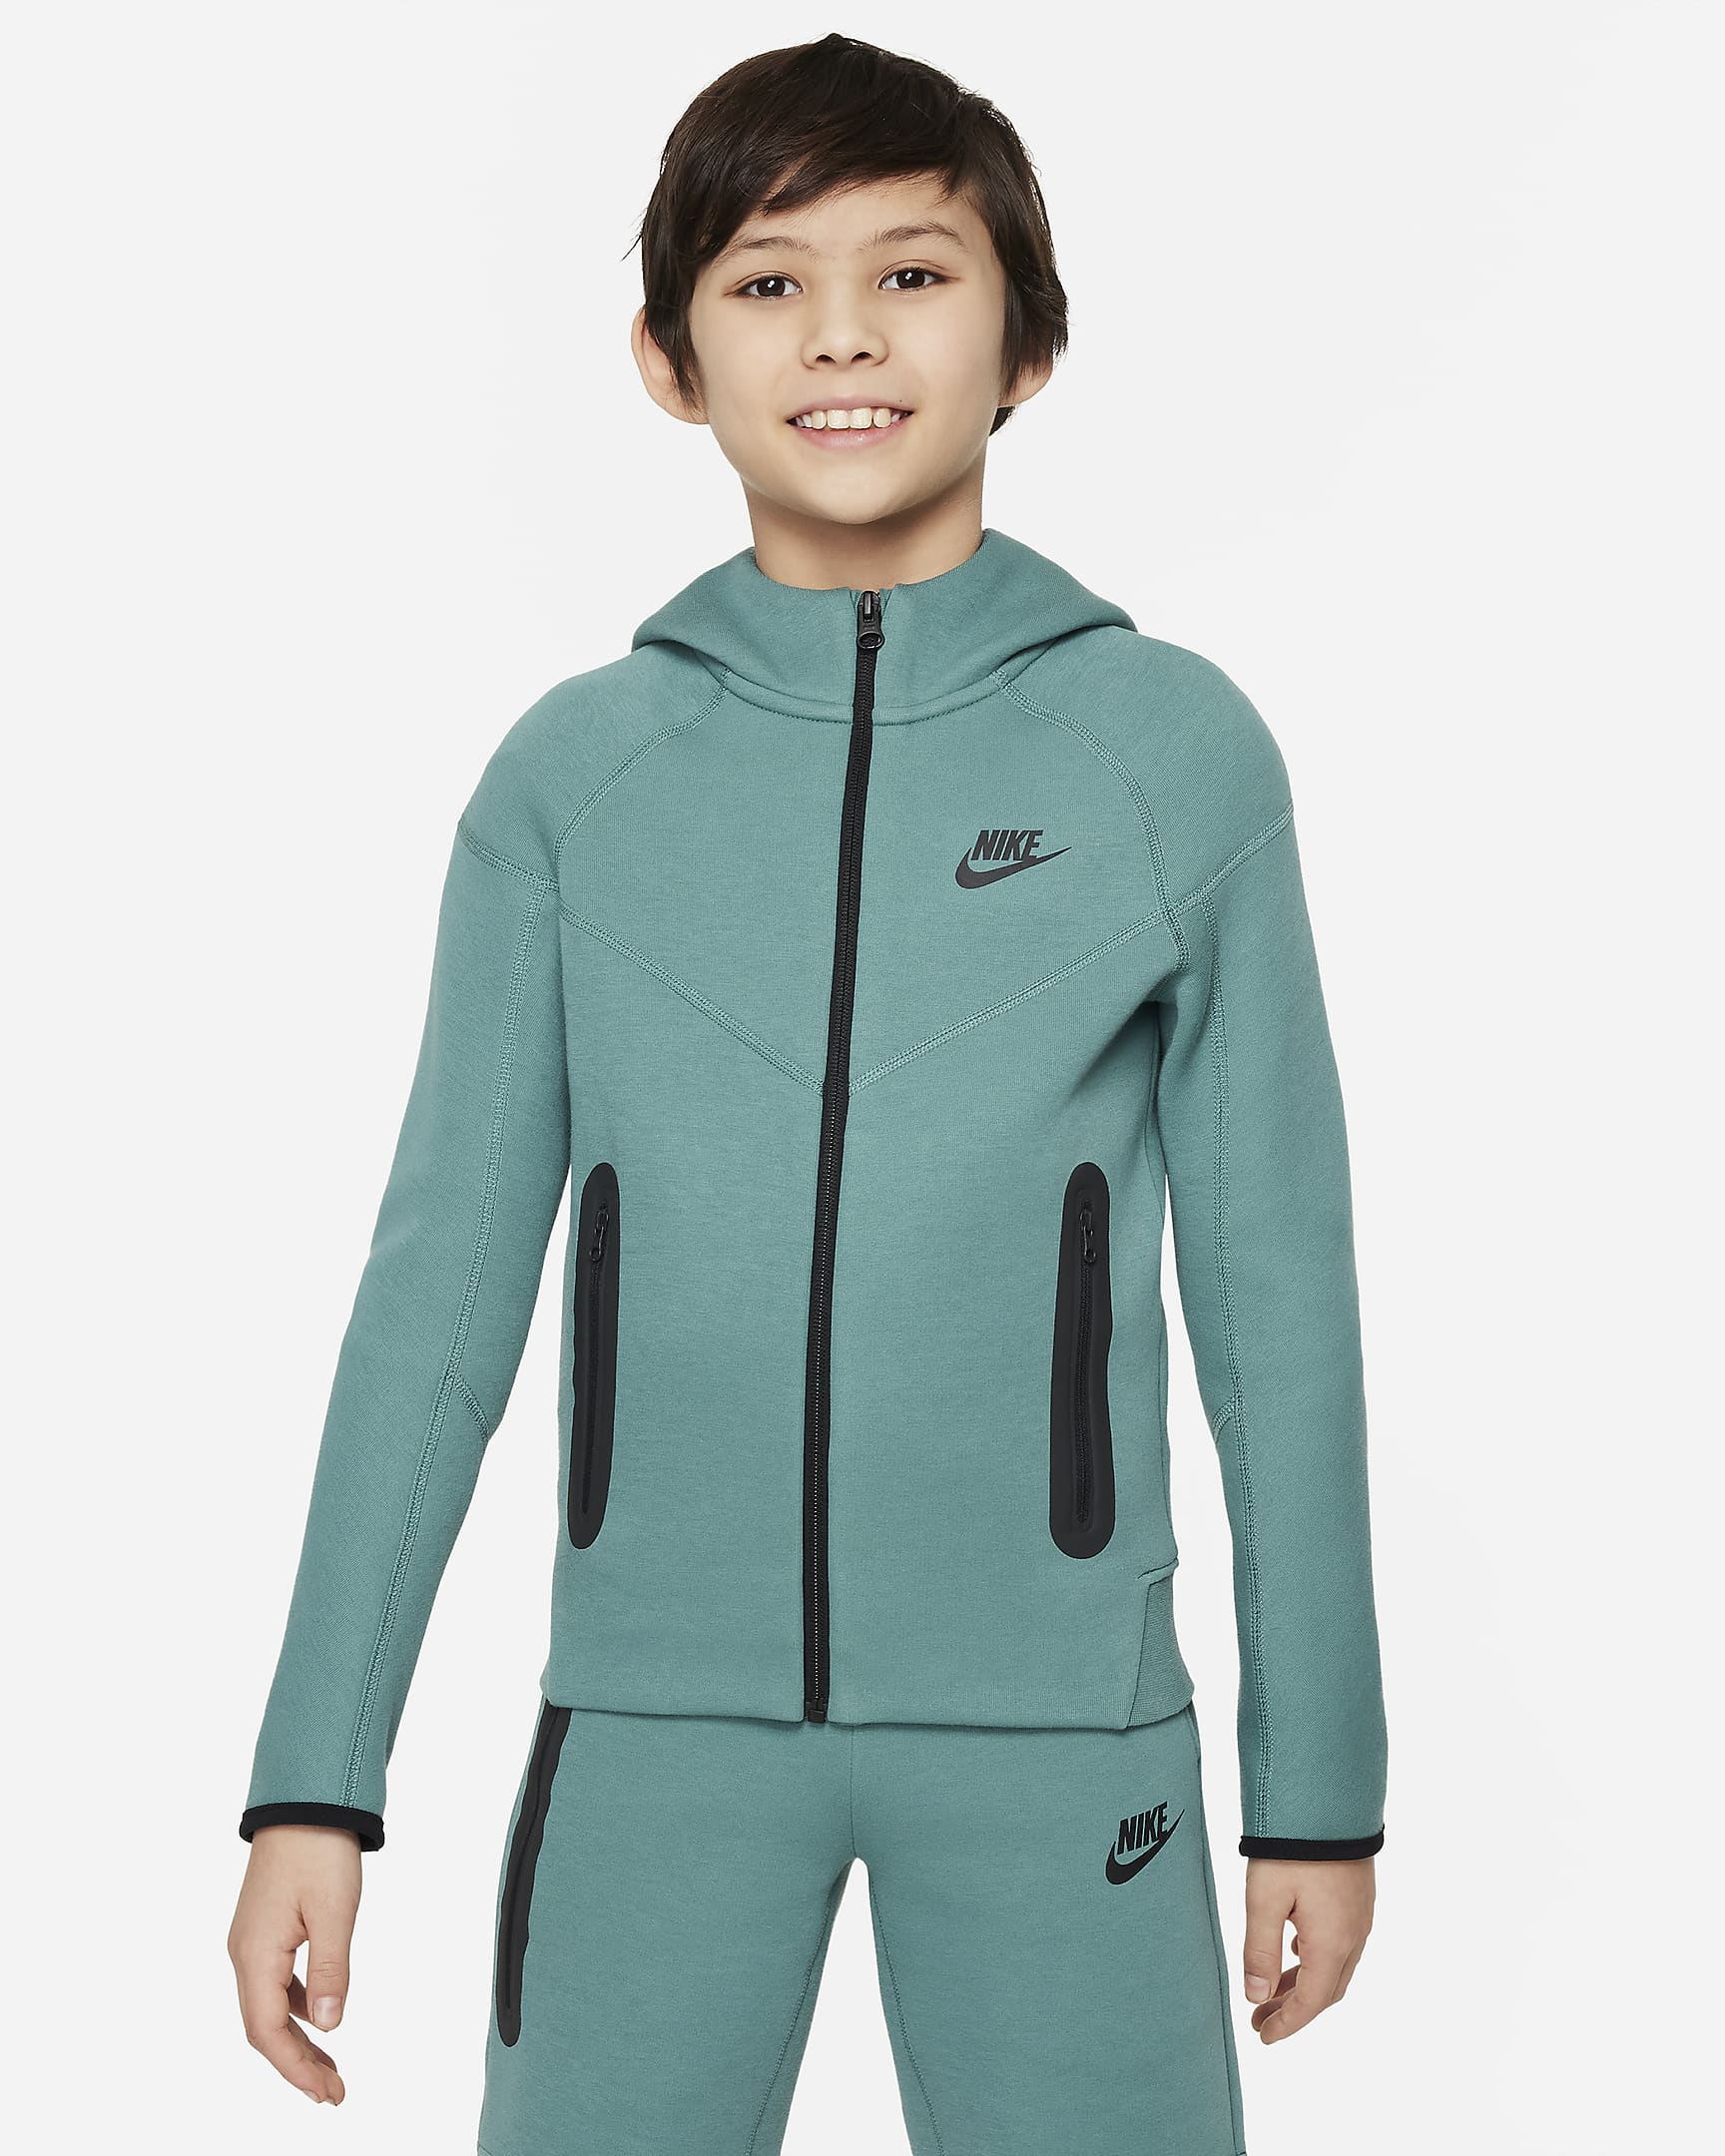 Nike Sportswear Tech Fleece Older Kids' (Boys') Full-Zip Hoodie - Bicoastal/Black/Black